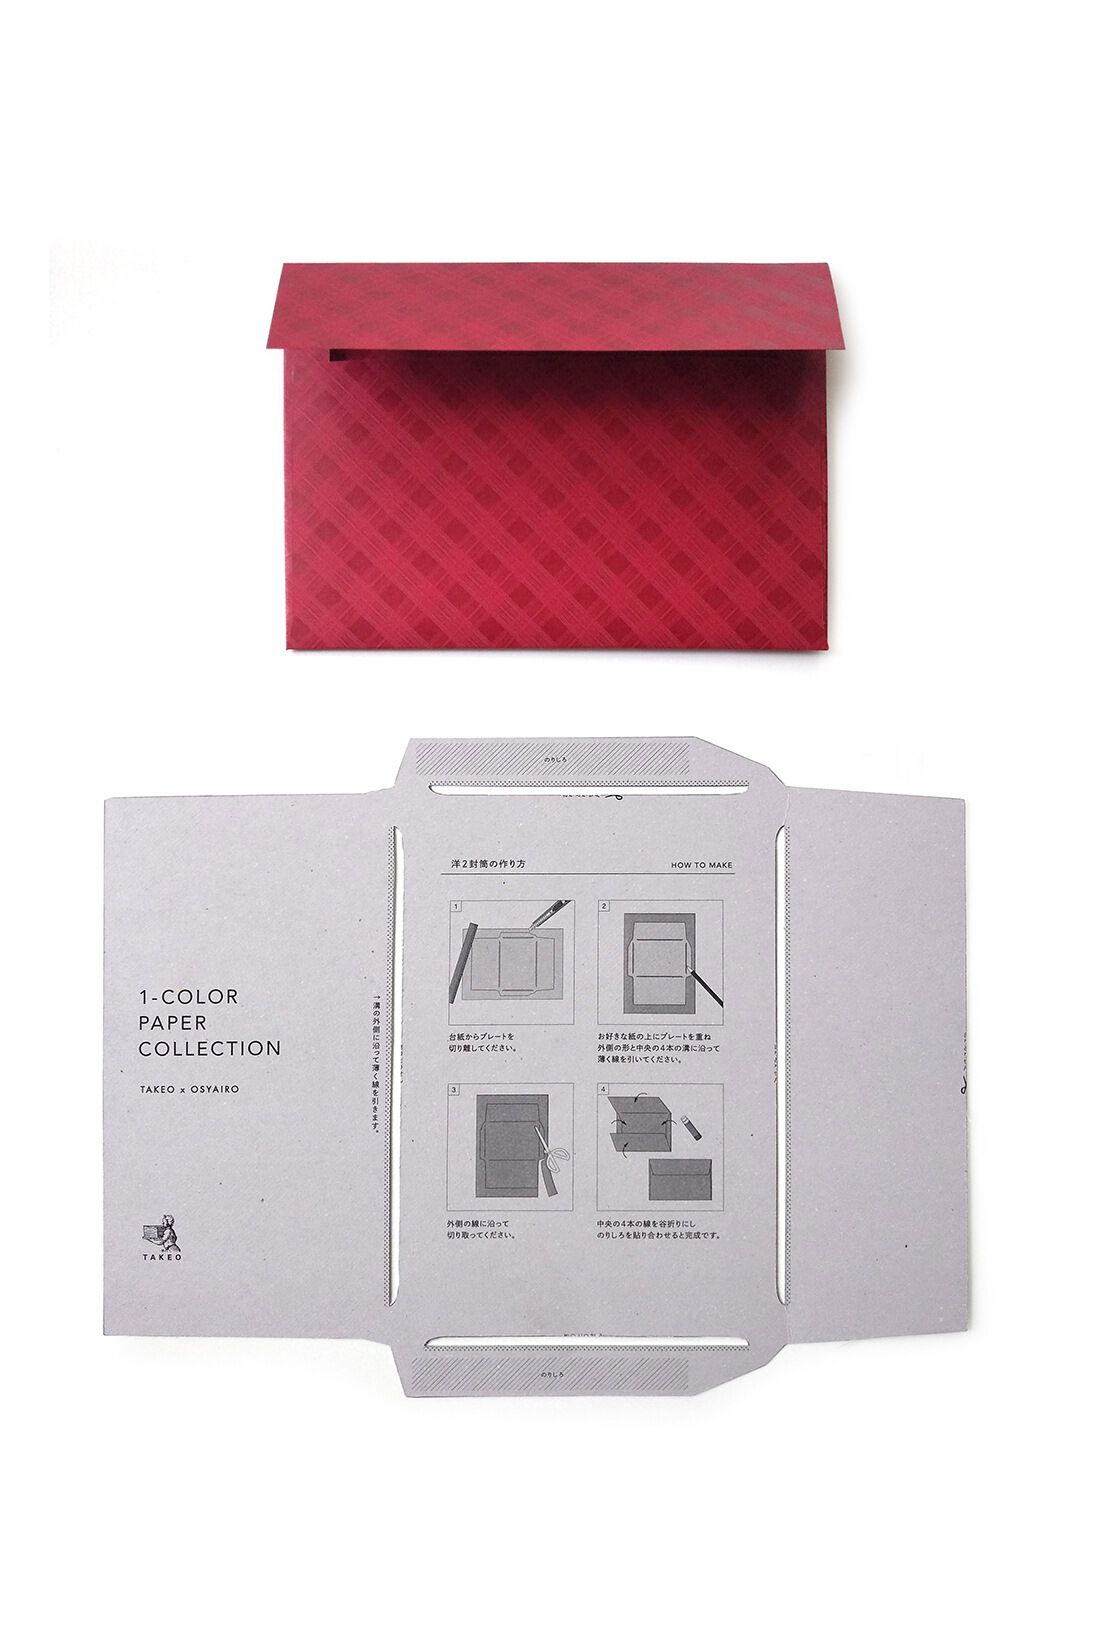 OSYAIRO|OSYAIRO 紙の専門商社竹尾が選ぶ　色を楽しむ紙セットの会〈赤〉|付属の型紙を使ってA4サイズの紙で封筒がきれいに簡単に作れます。